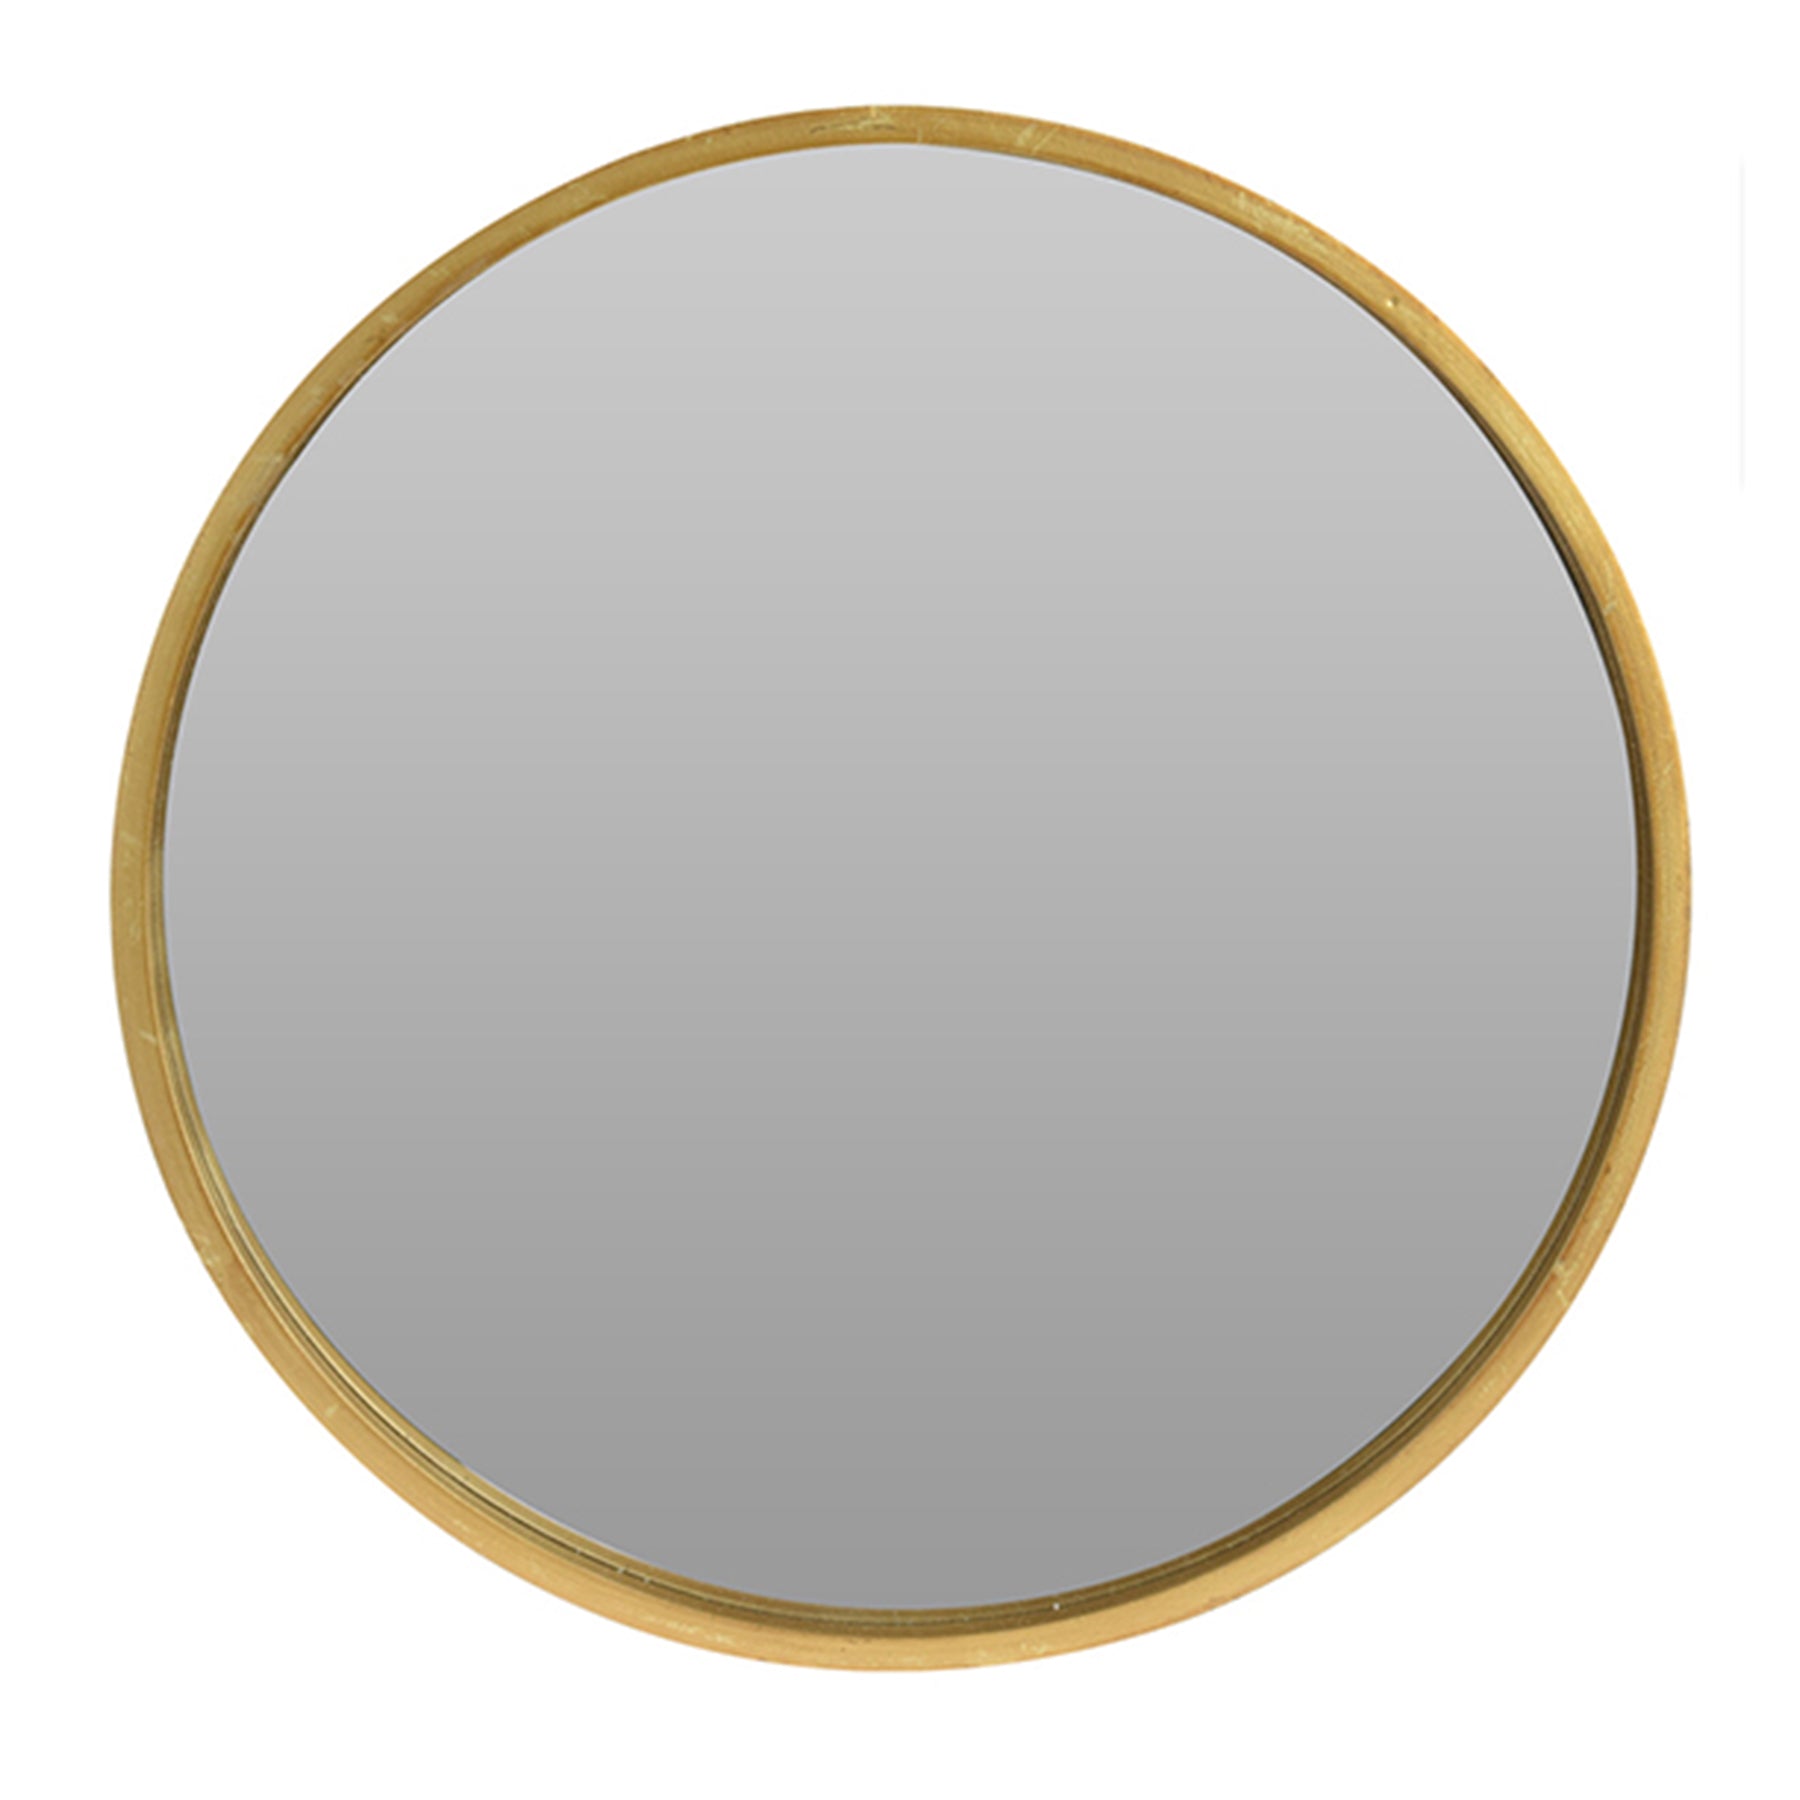 Round shape mirror - Golden